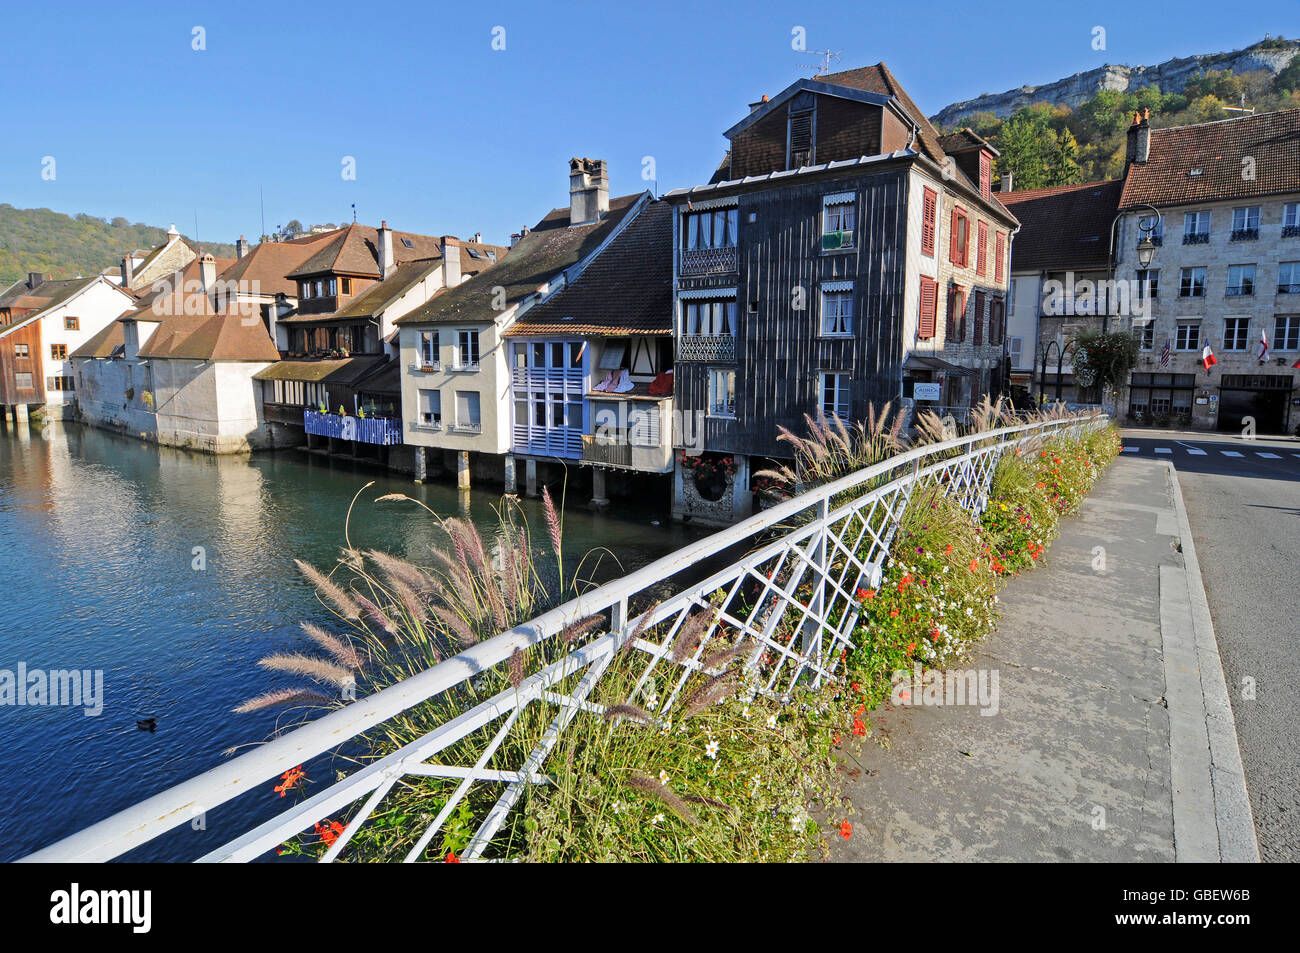 Loue river, Besancon, Doubs, Franche-Comte, France Stock Photo